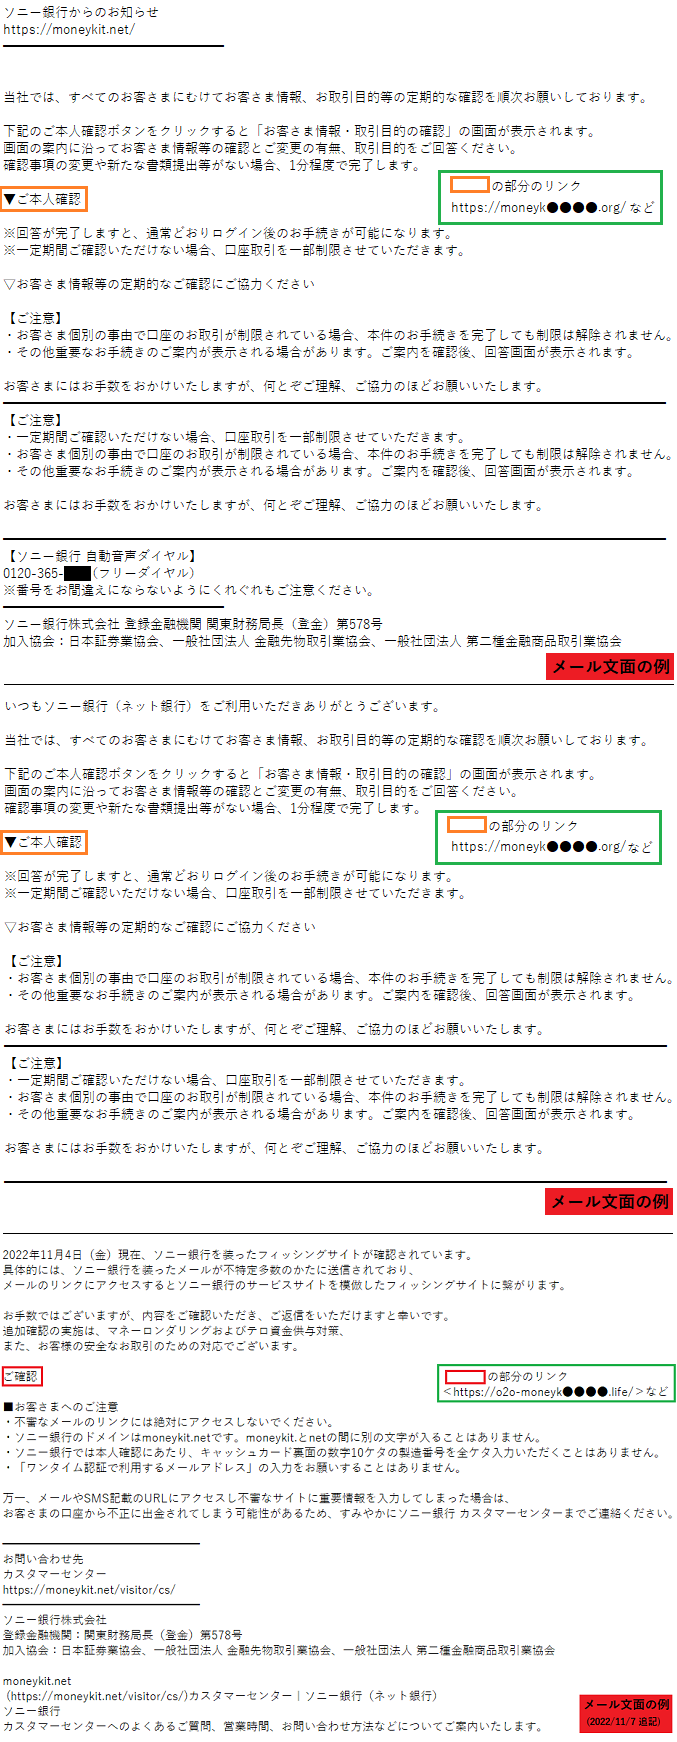 ソニー銀行をかたるフィッシング (2022/11/04)